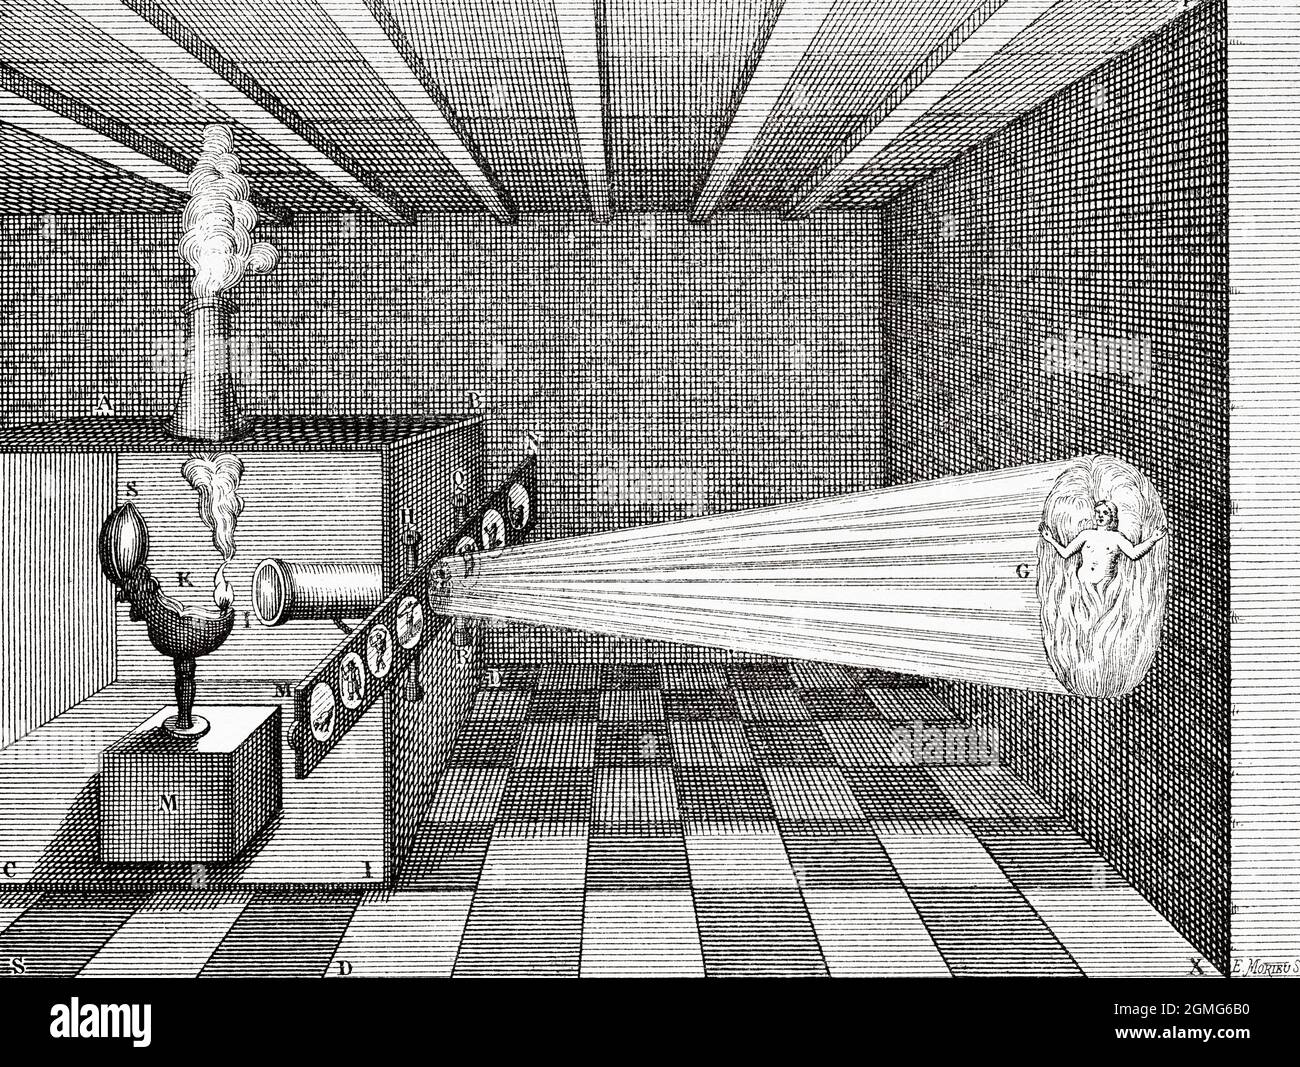 Lanterne magique du père Kircher 1671. Projecteur de diapositives lanterne par Athanasius Kircher. Une caméra obscura (Lanterne magique) projette l'image d'un homme en feu dans l'Enfer. Ancienne illustration gravée du XIXe siècle de la nature 1883 Banque D'Images